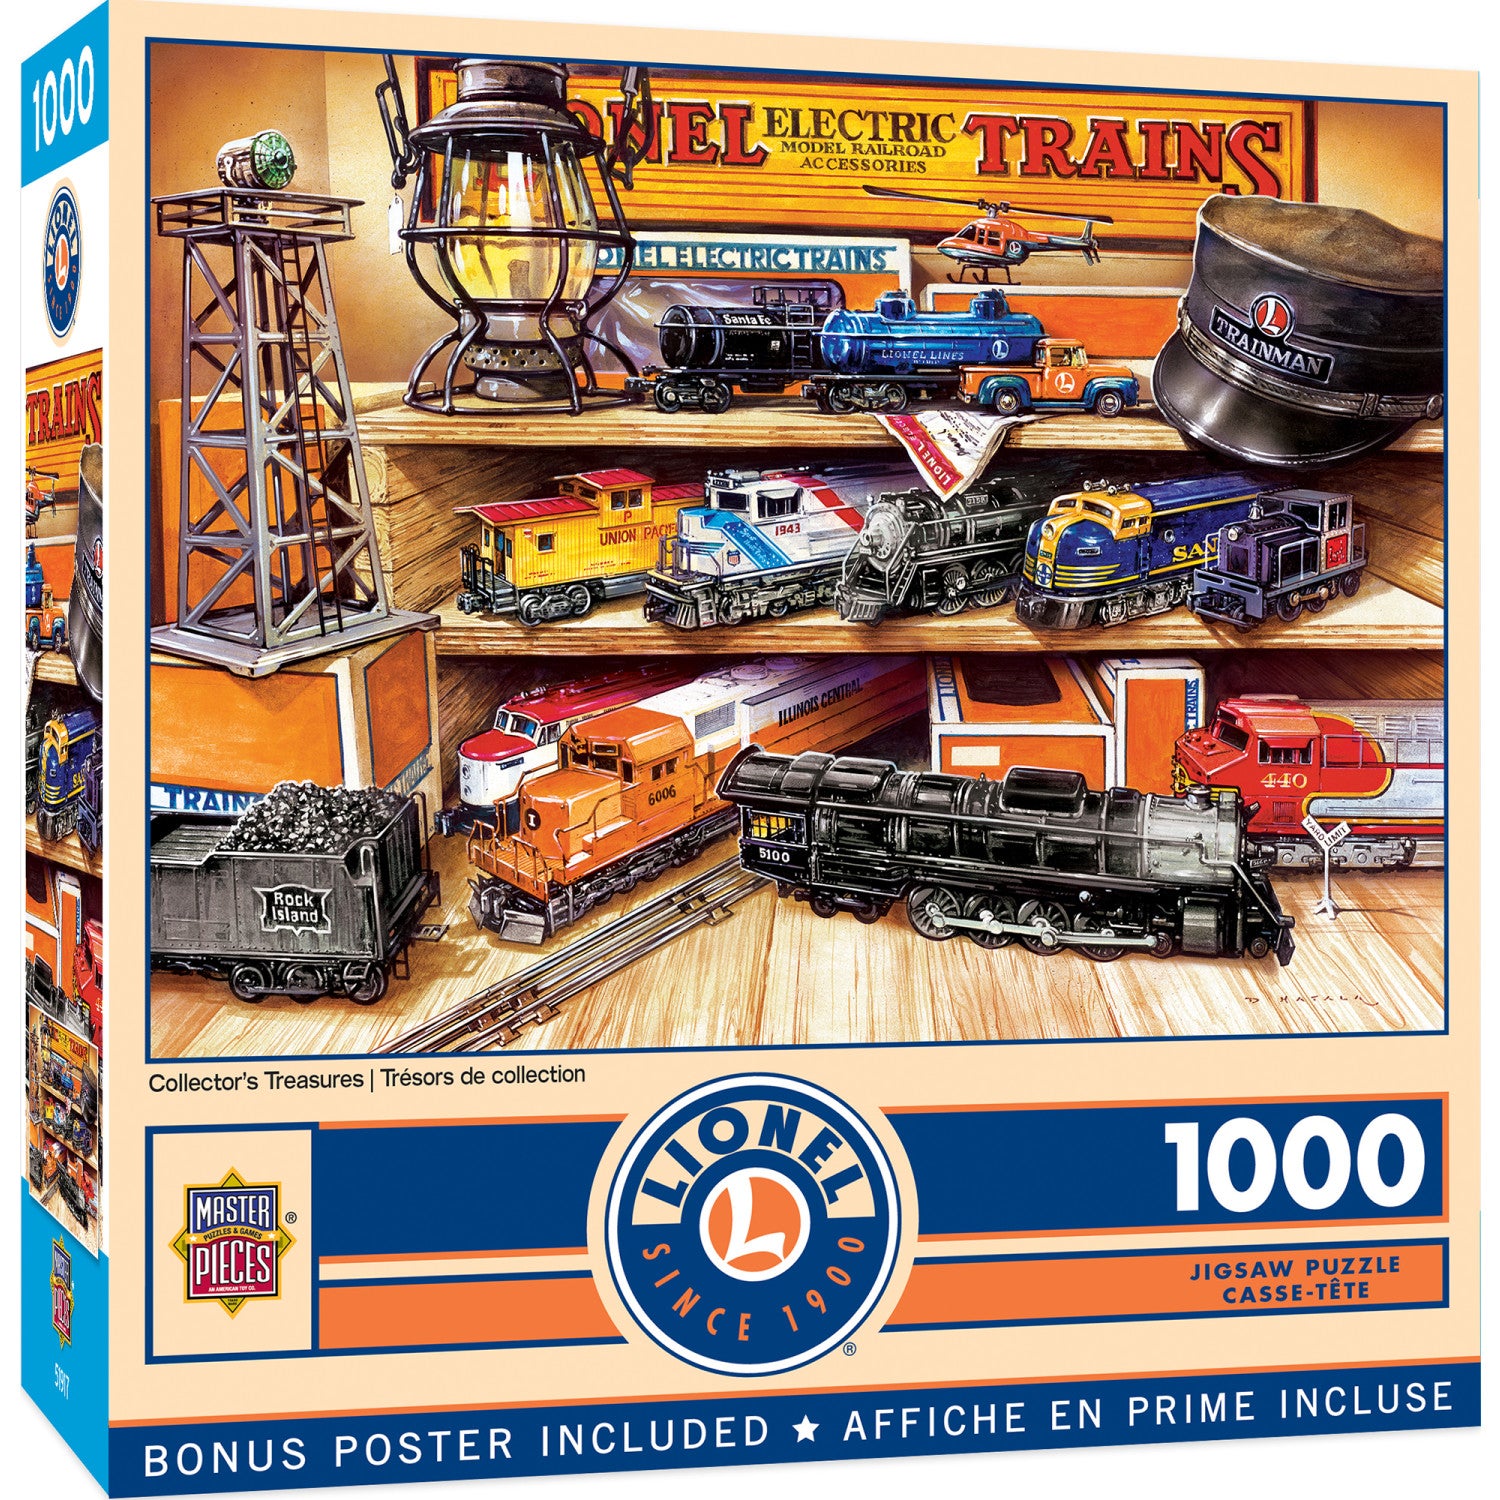 Lionel Trains - Collector's Treasures 1000 Piece Puzzle